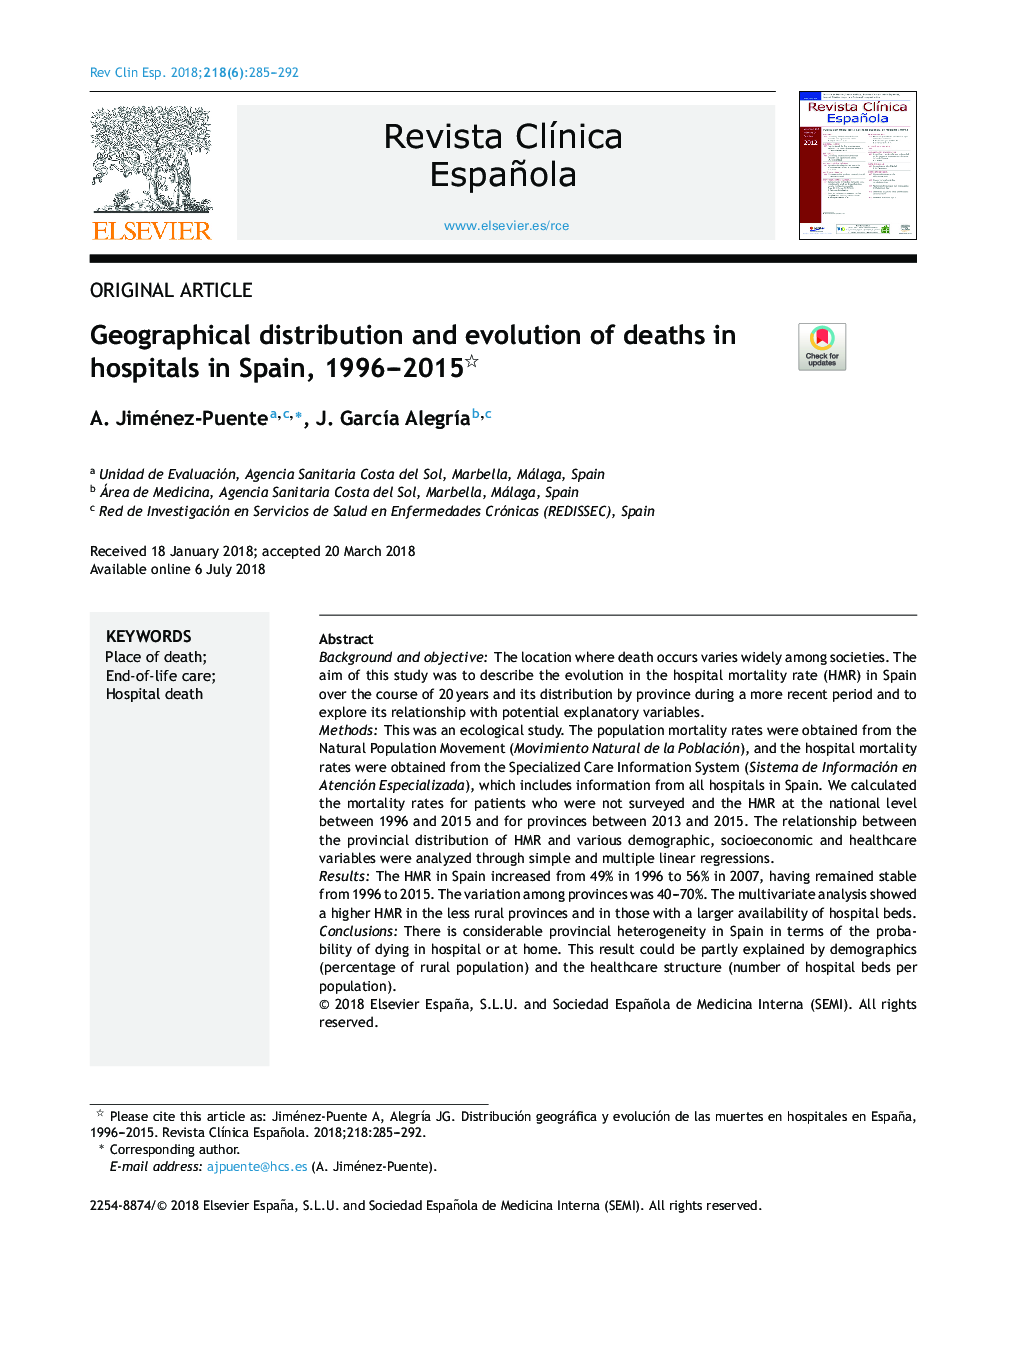 توزیع و تکامل جغرافیایی مرگ و میر در بیمارستان ها در اسپانیا، 1996-2015 